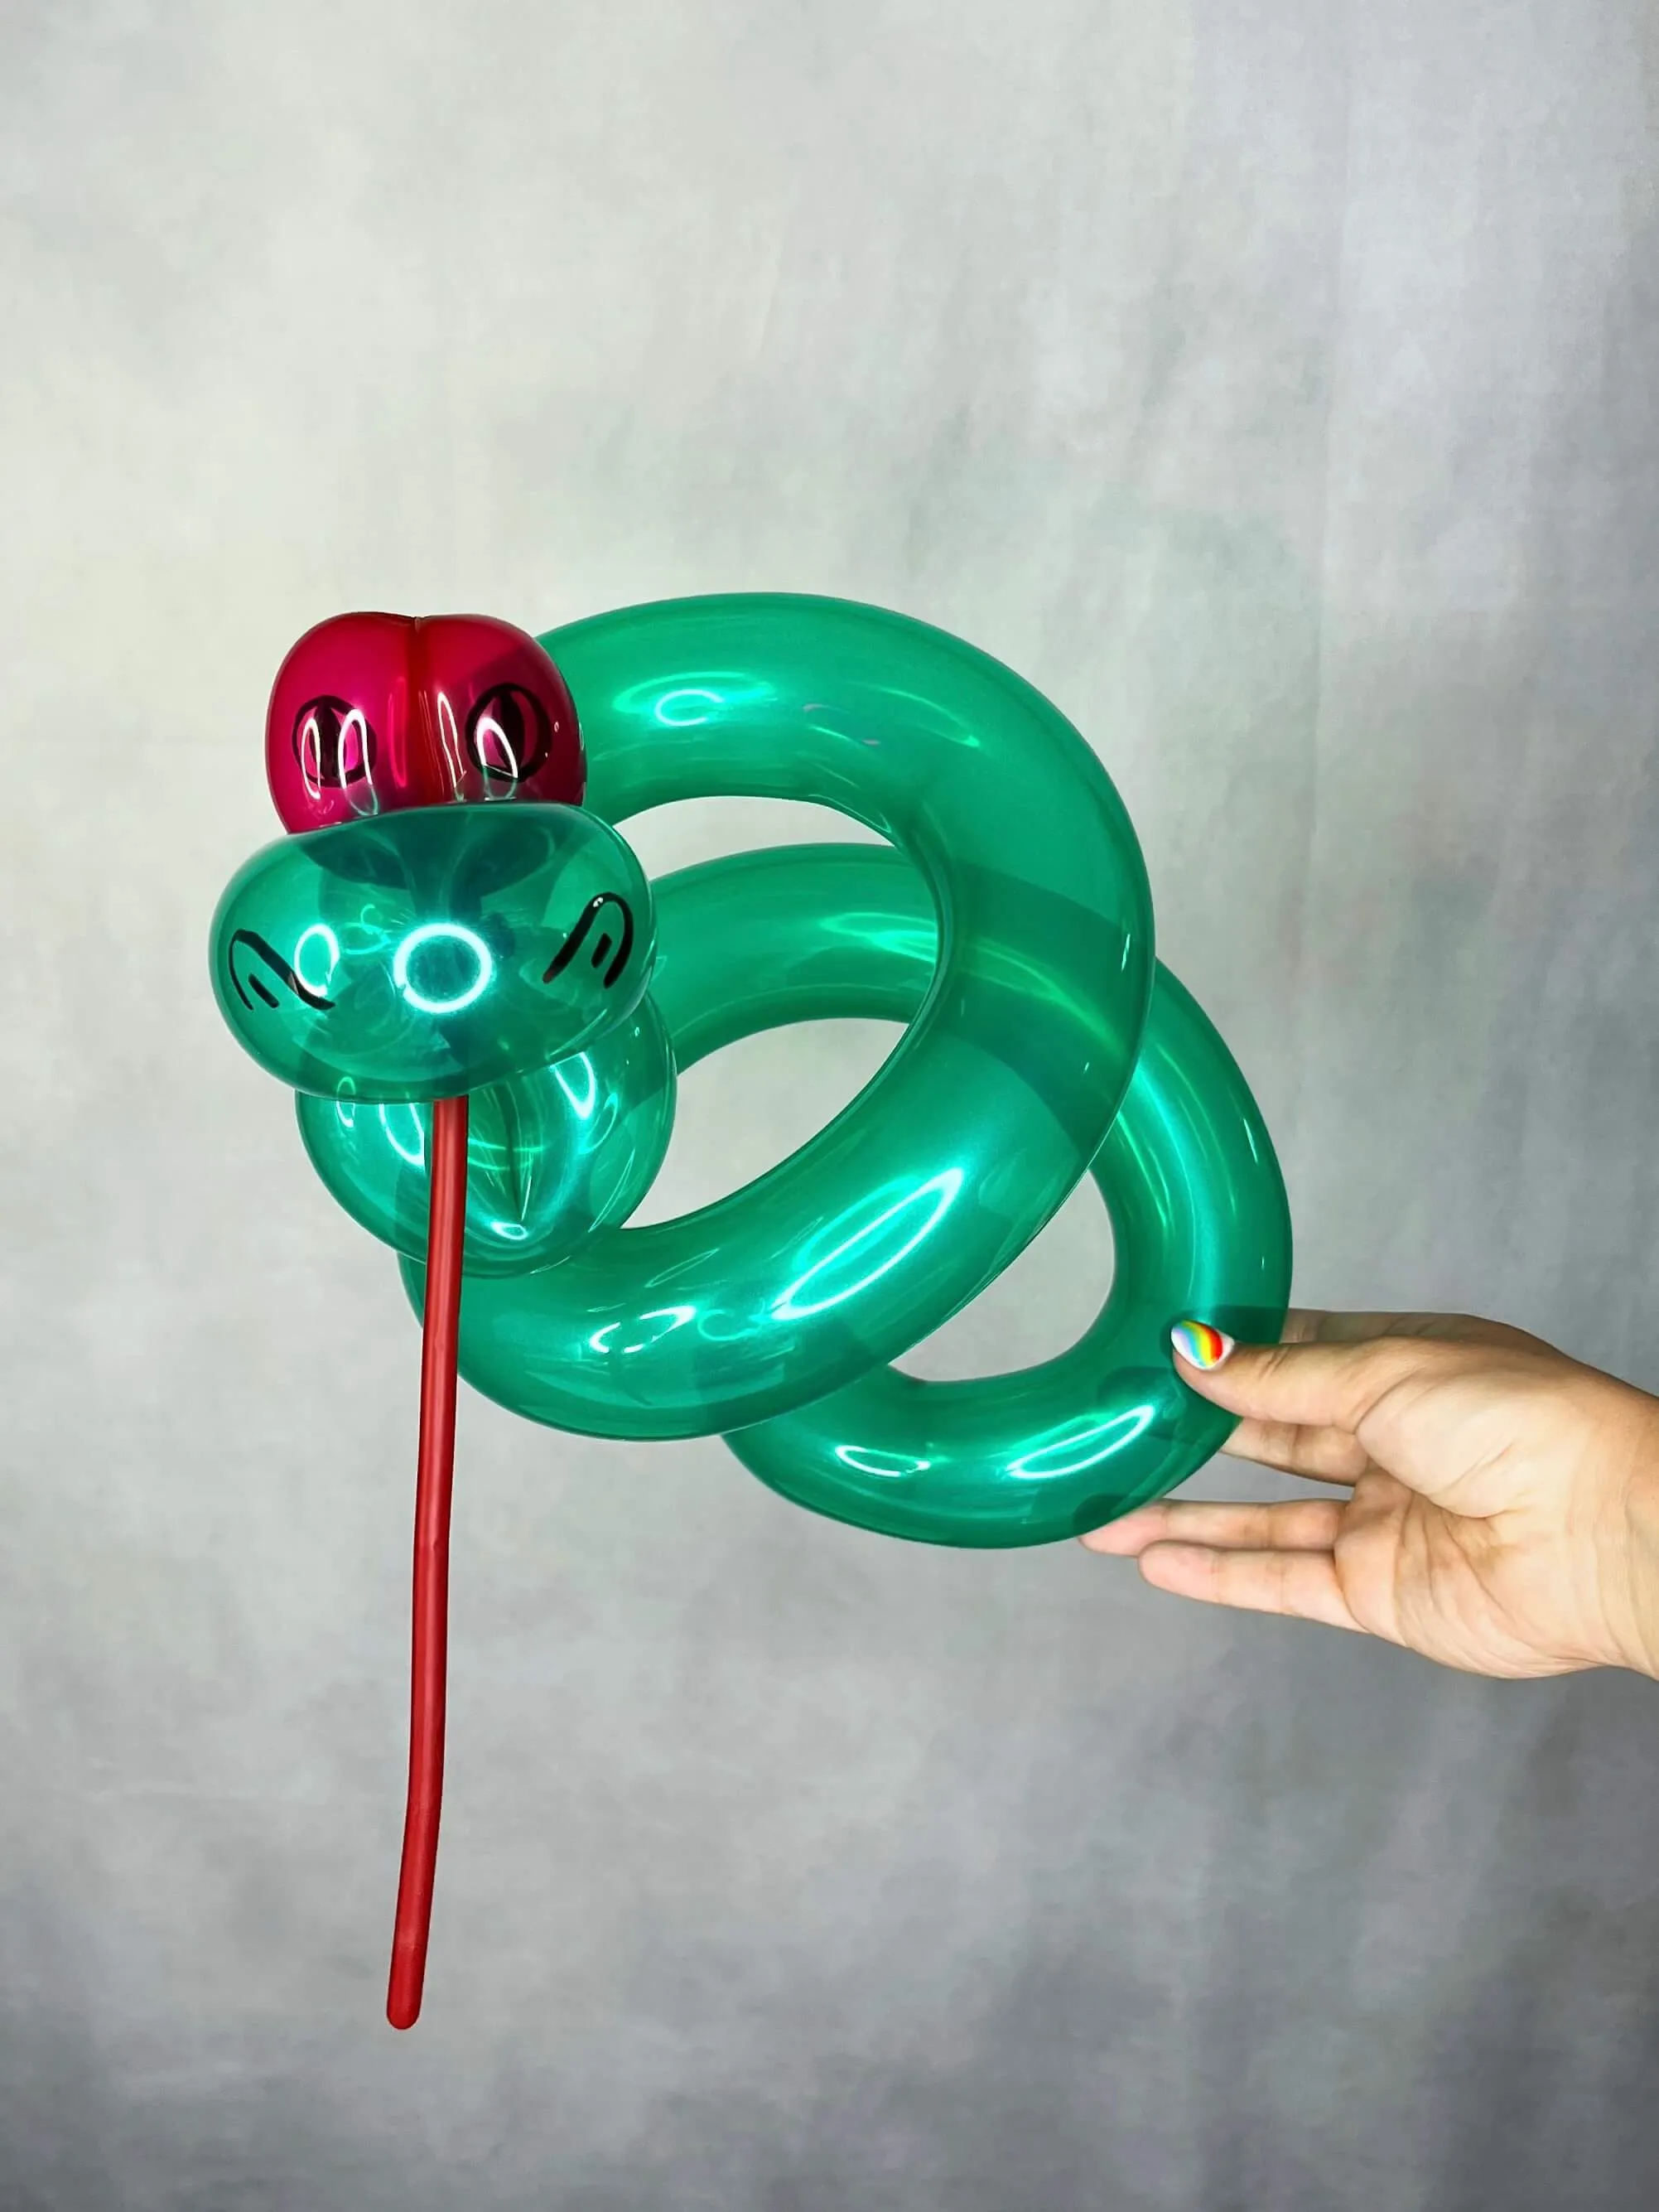 Balloon sculpture of a snake